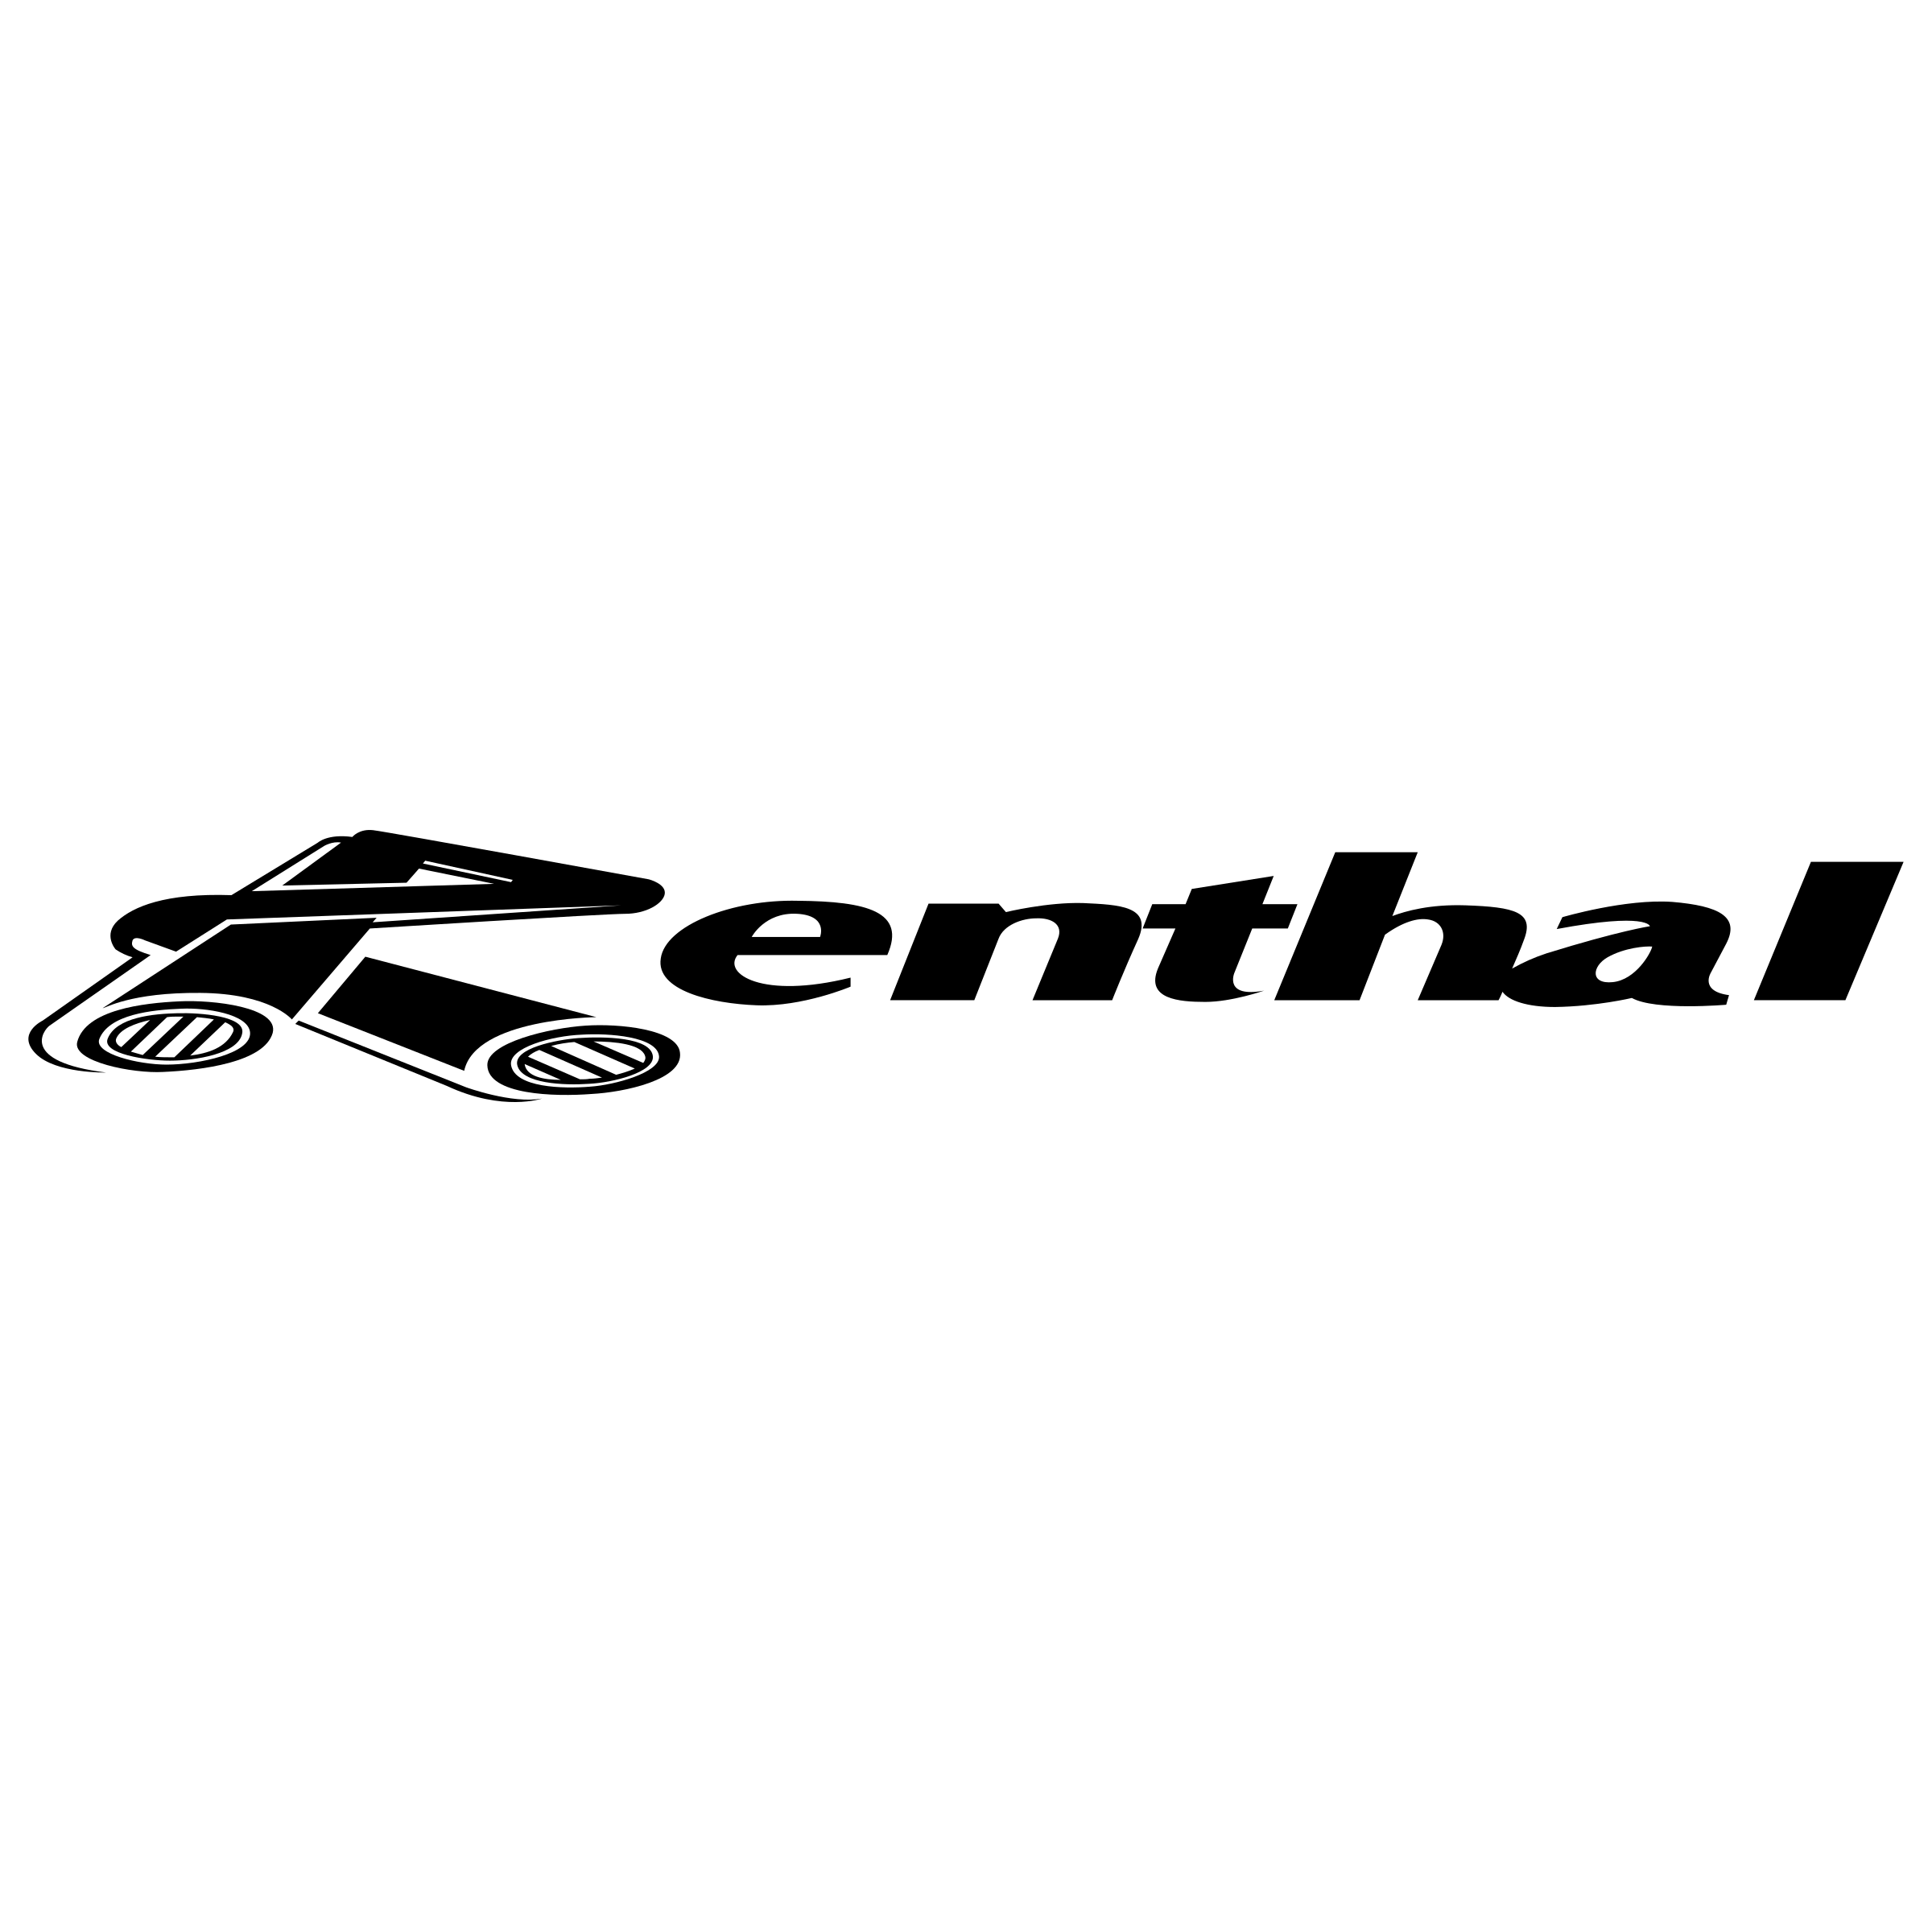 Renthal Logo - Renthal Logo PNG Transparent & SVG Vector